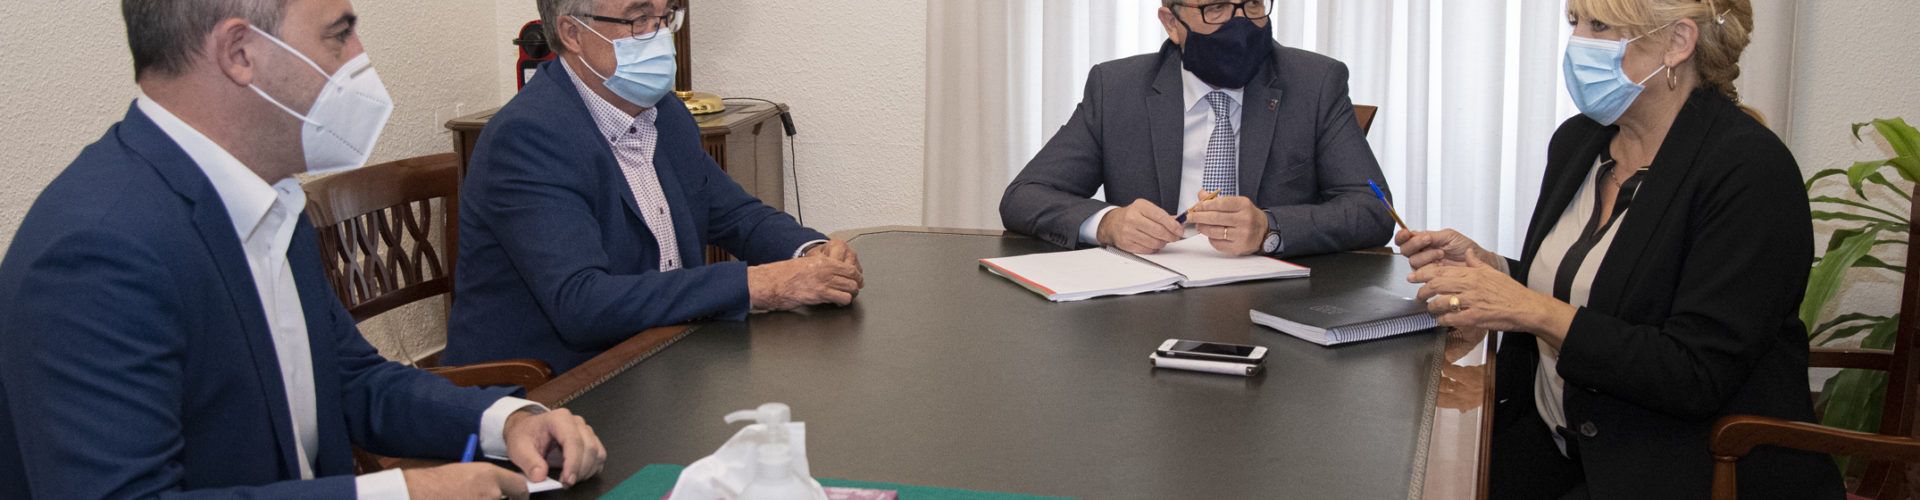 La Diputació i la Generalitat planegen la signatura d’un conveni per a l’elaboració d’un estudi sobre l’escassetat d’habitatge a l’interior de la província